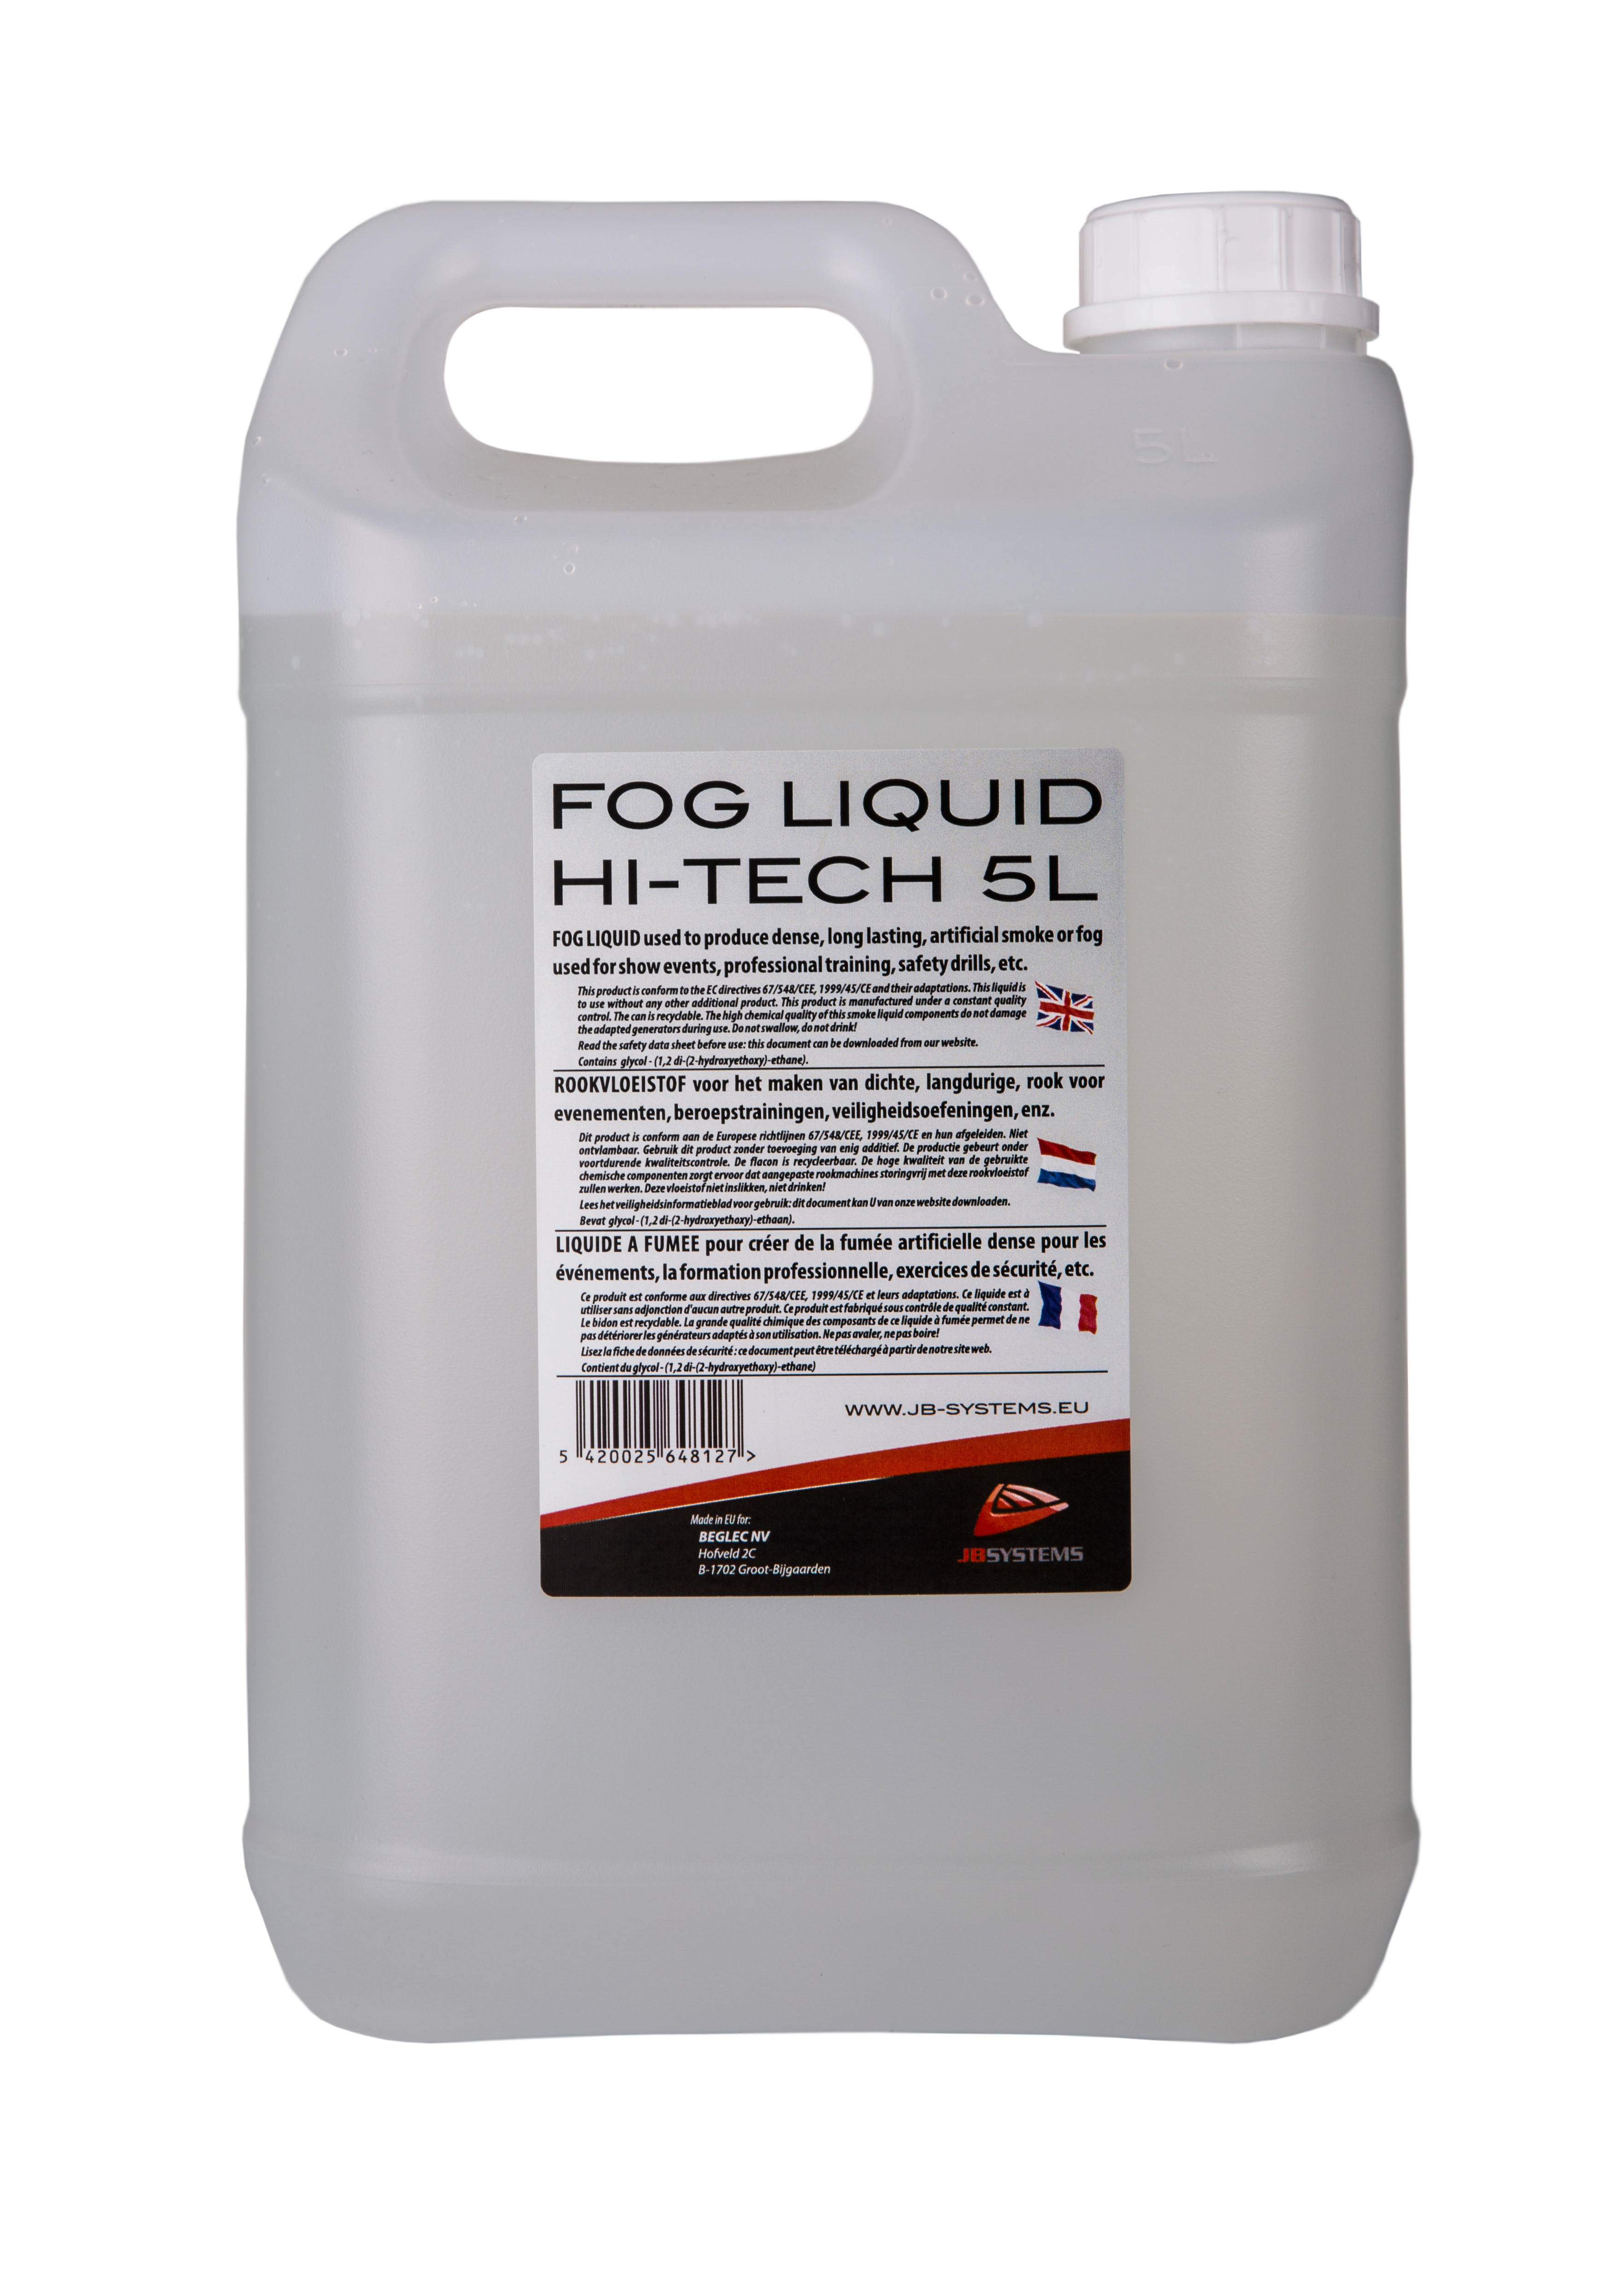 Fogger liquid Hi-Tech, 5L.